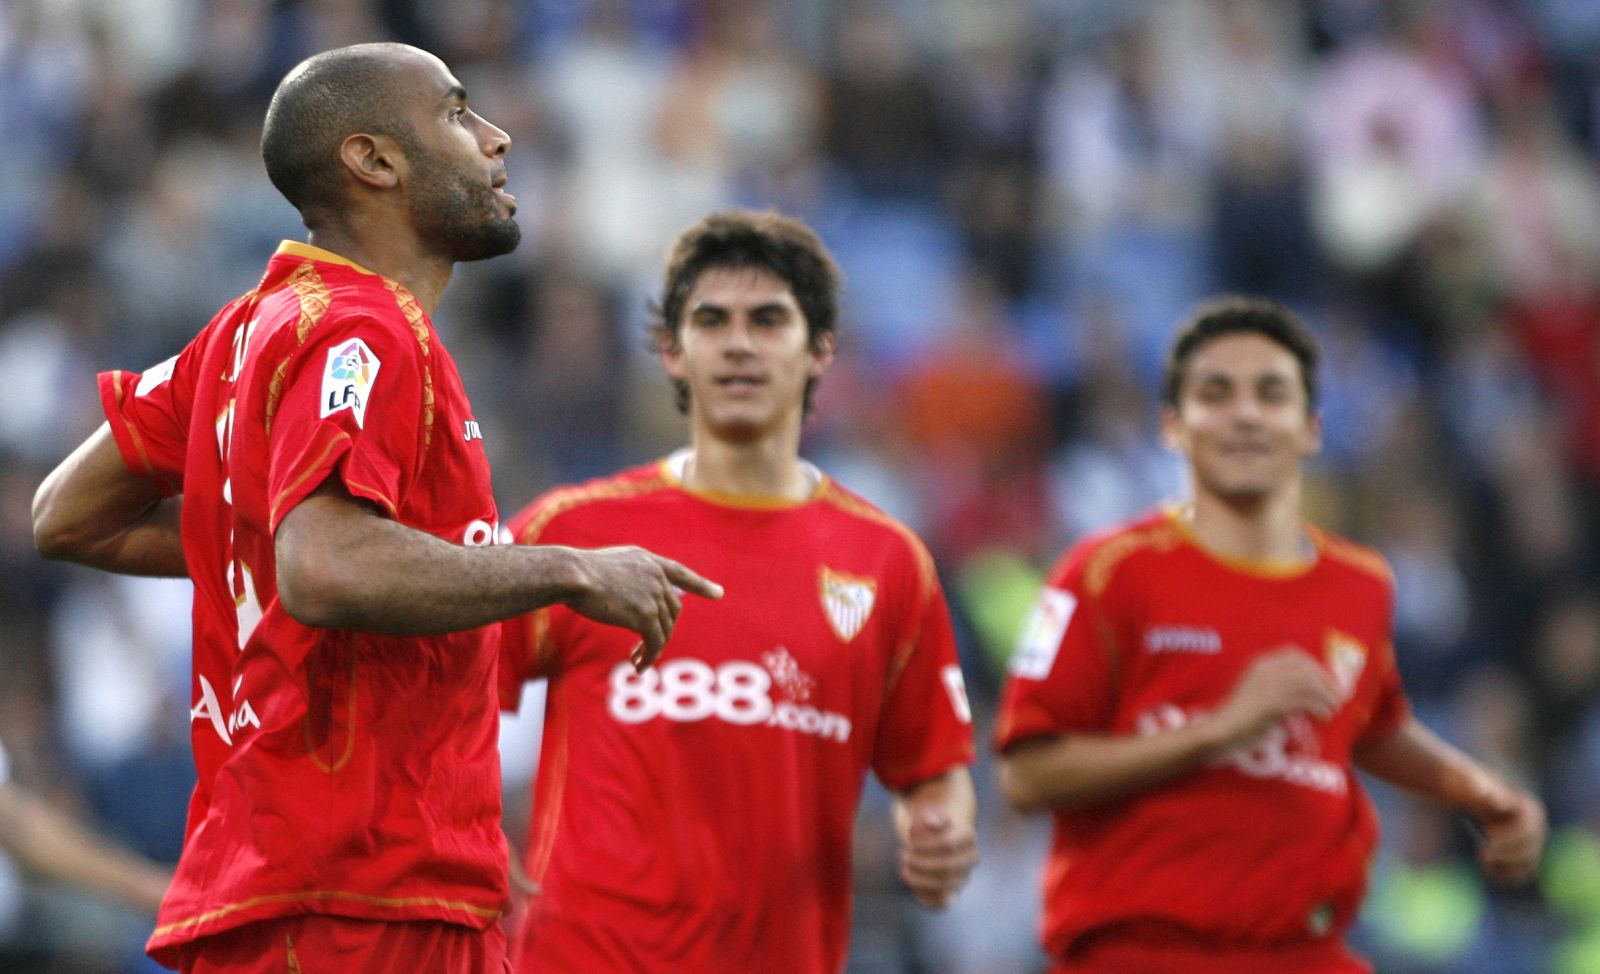 Un penalti convertido por Kanoute bastó para resolver el derbi andaluz en Huelva.